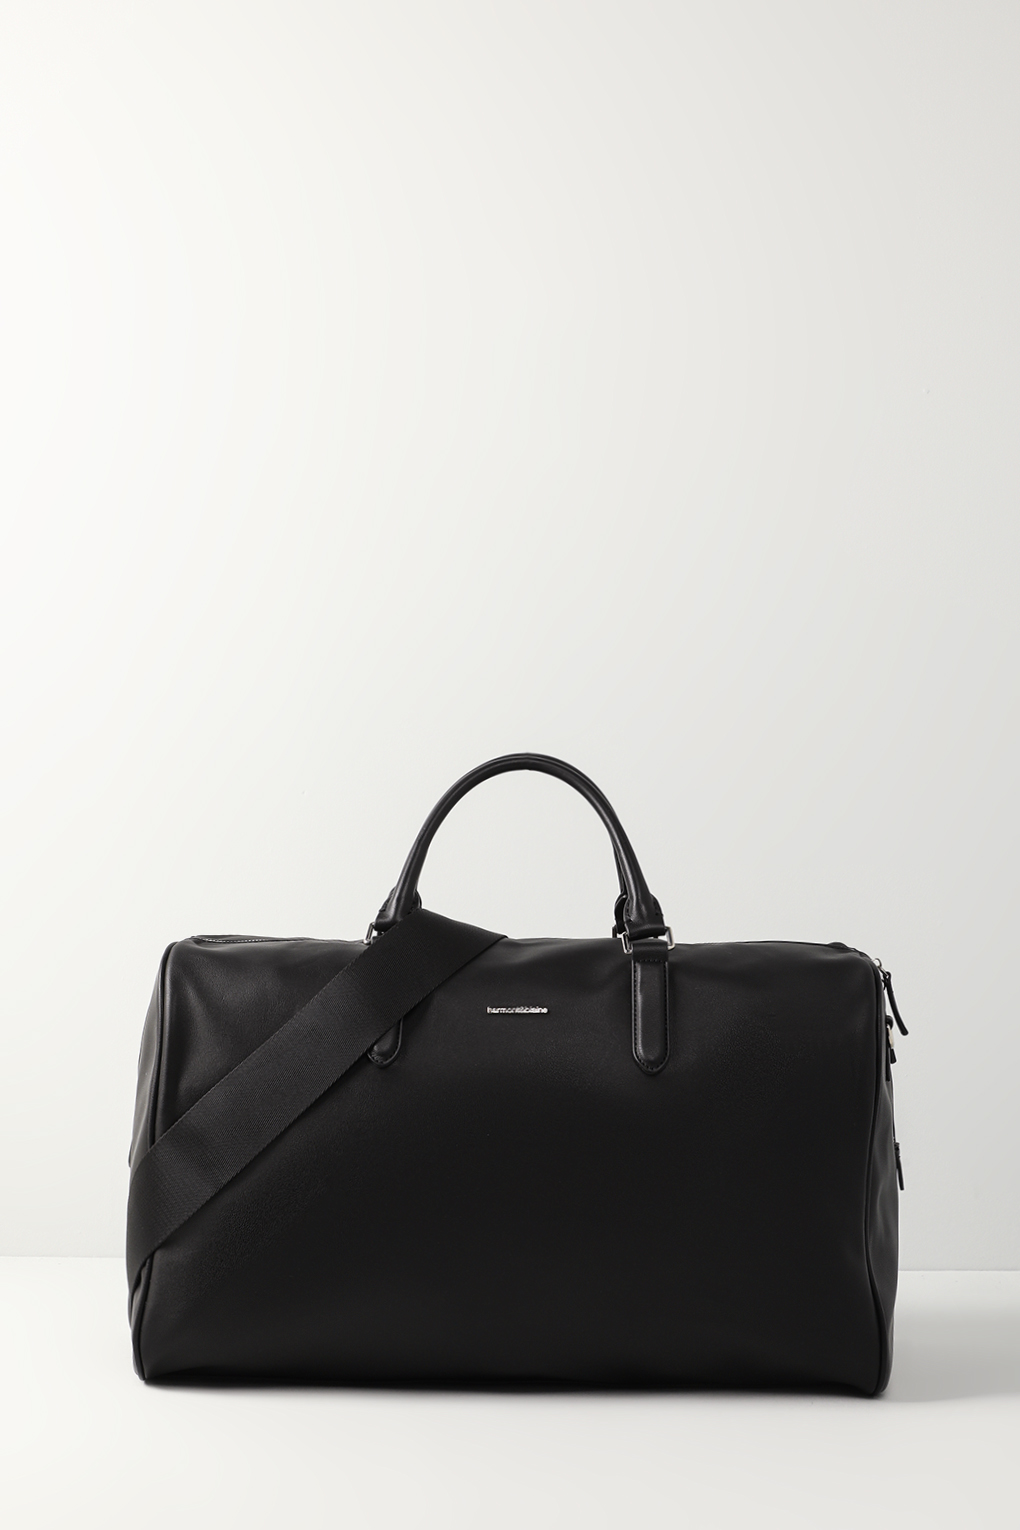 Дорожная сумка мужская Harmont & blaine H1EPMH79005Z черная, 49x30x22 см